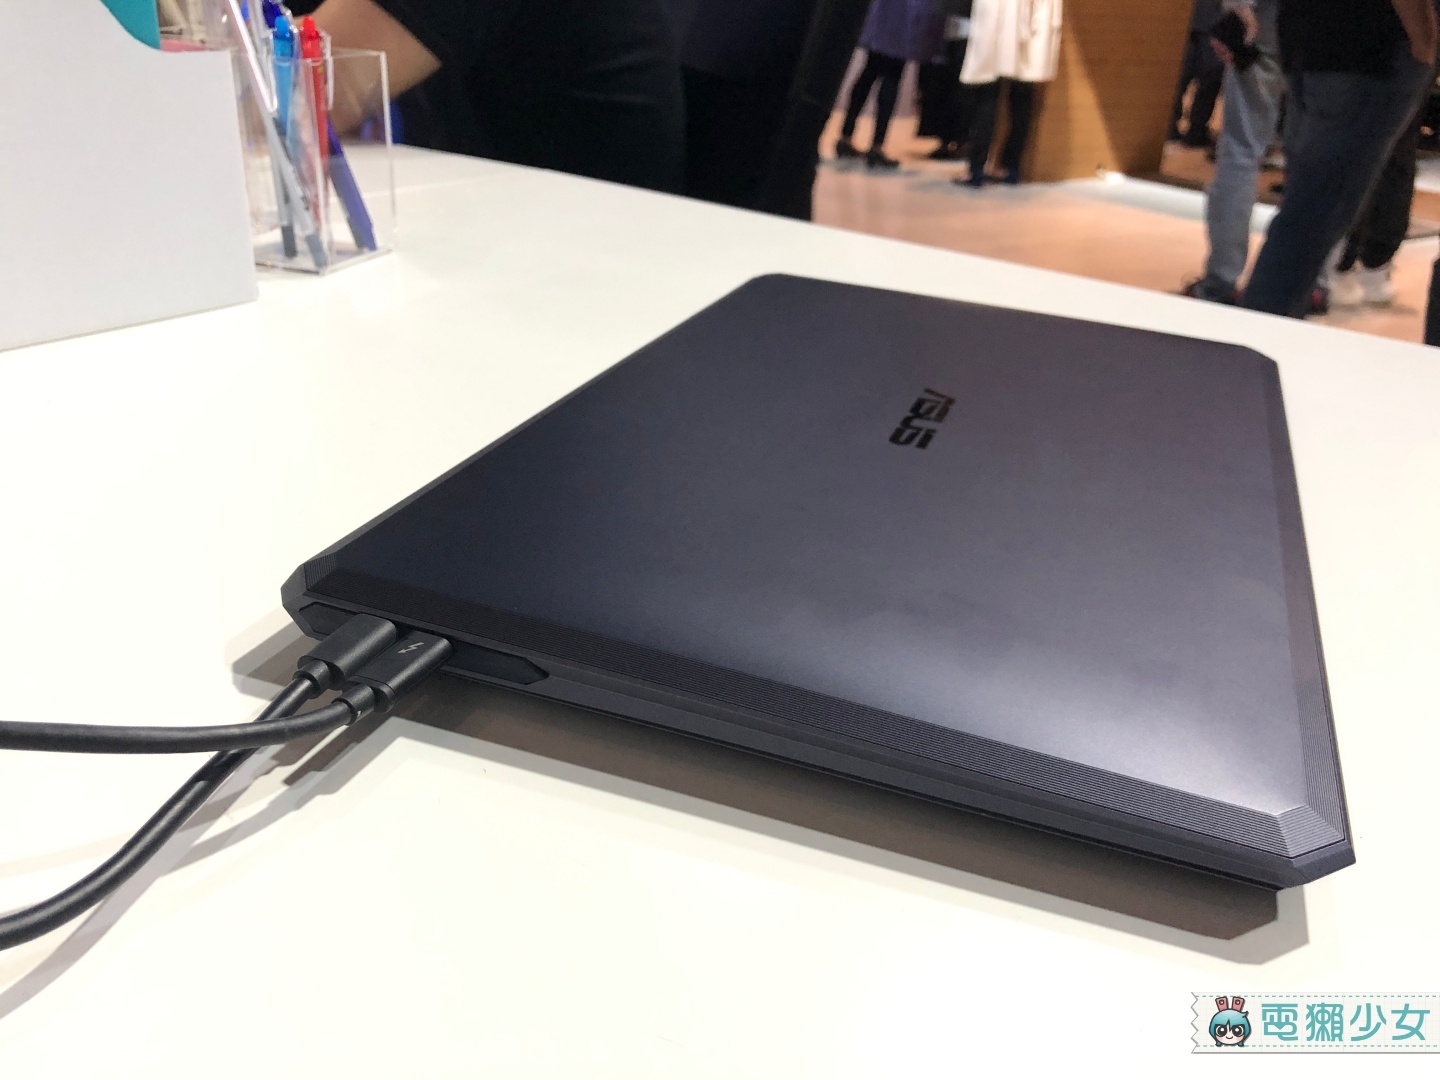 出門｜華碩在台推出『 ProArt StudioBook One 』專為高階創作者打造的筆電 規格衝天 售價33萬台幣